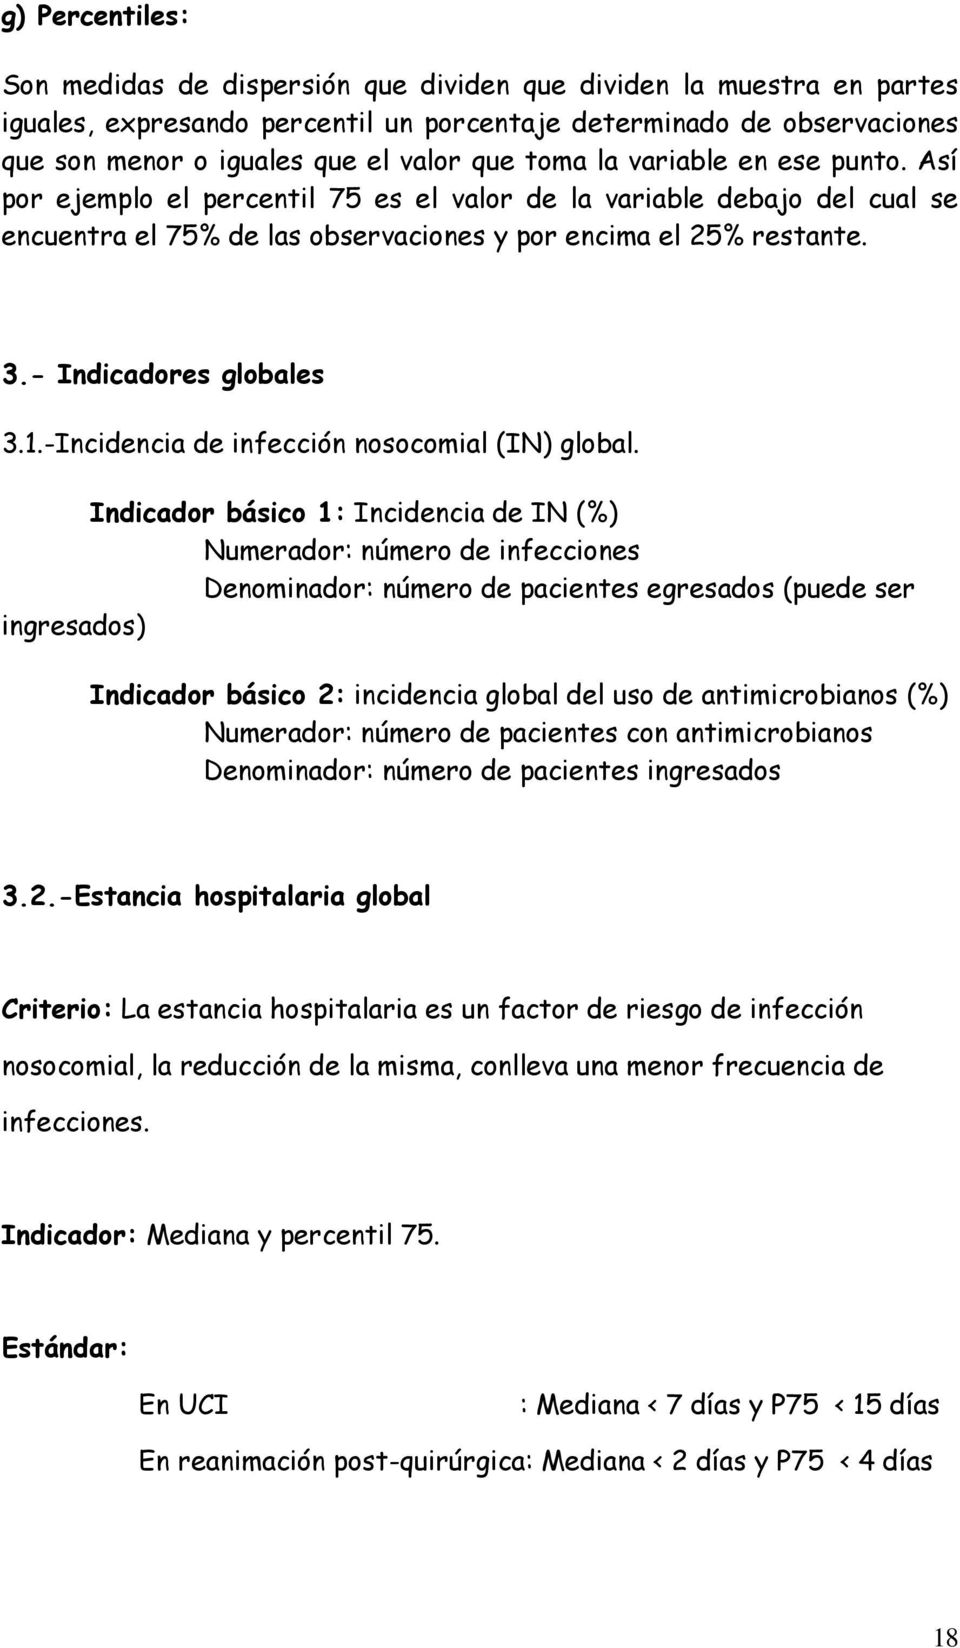 - Indicadores globales 3.1.-Incidencia de infección nosocomial (IN) global.